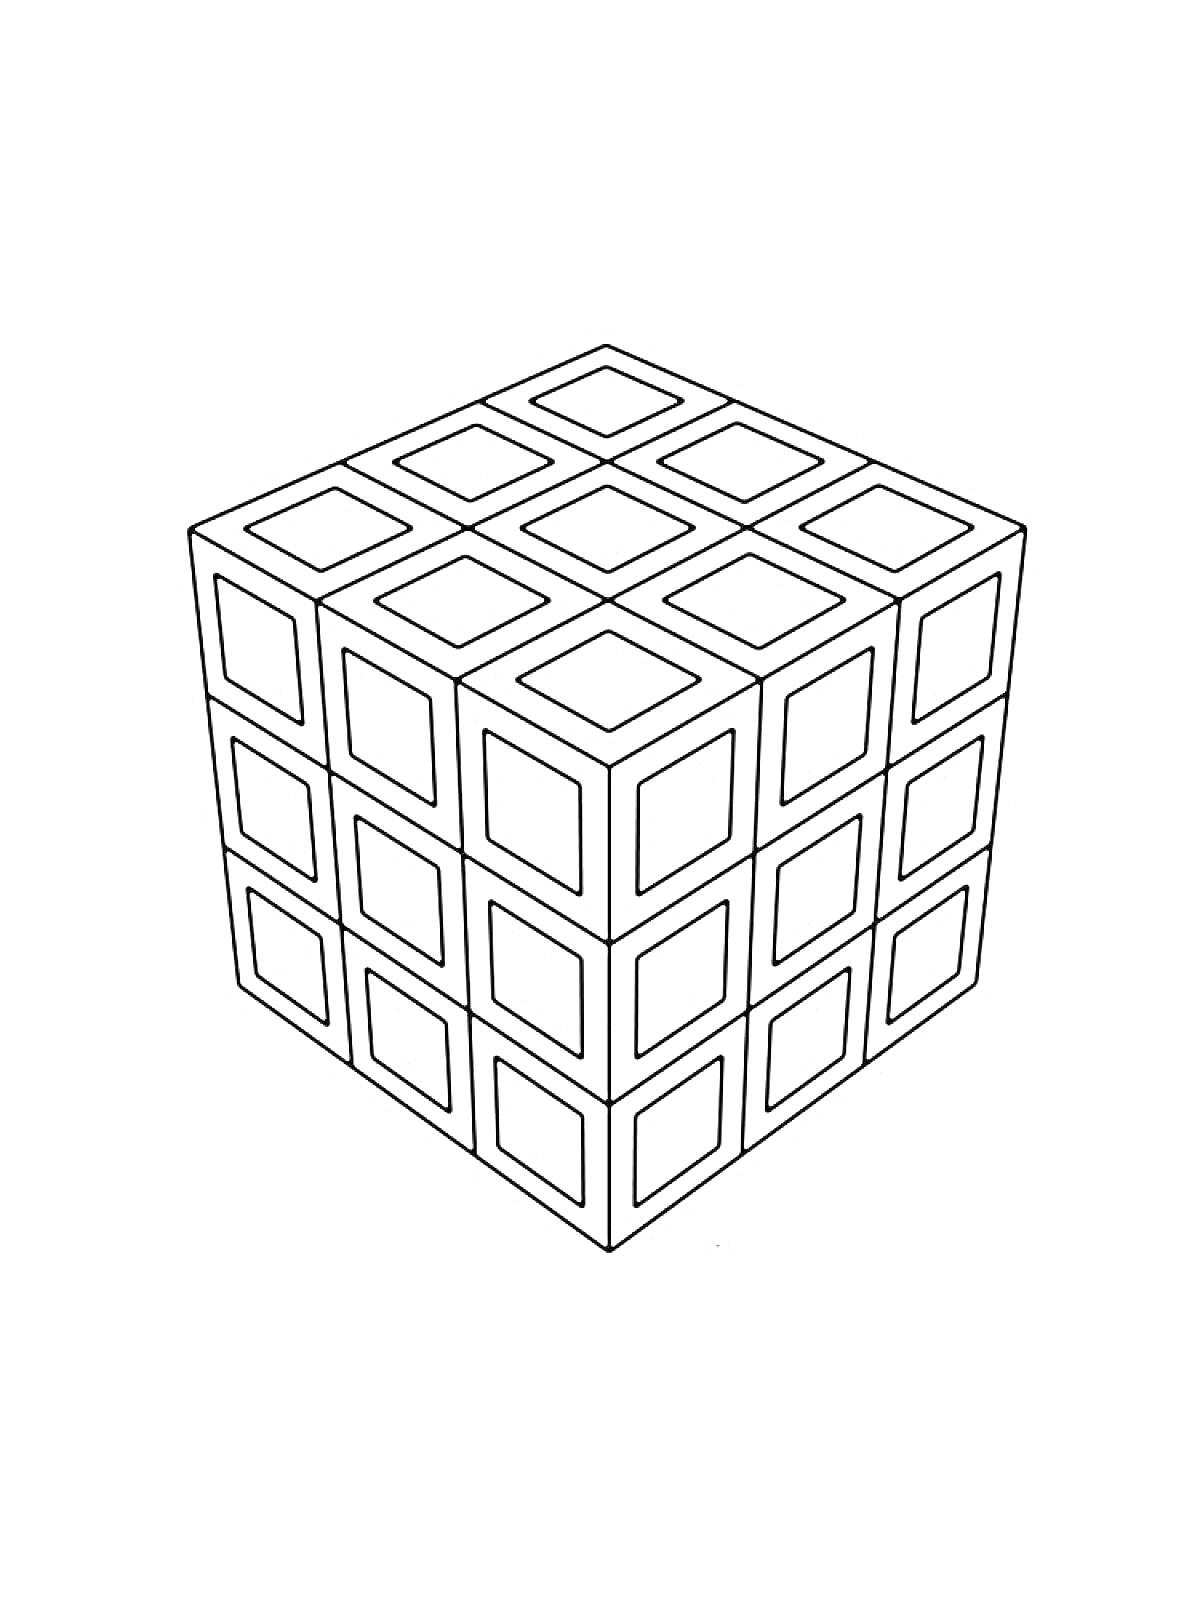 Раскраска Кубик Рубика с видимыми тремя гранями и девятью элементами на каждой грани